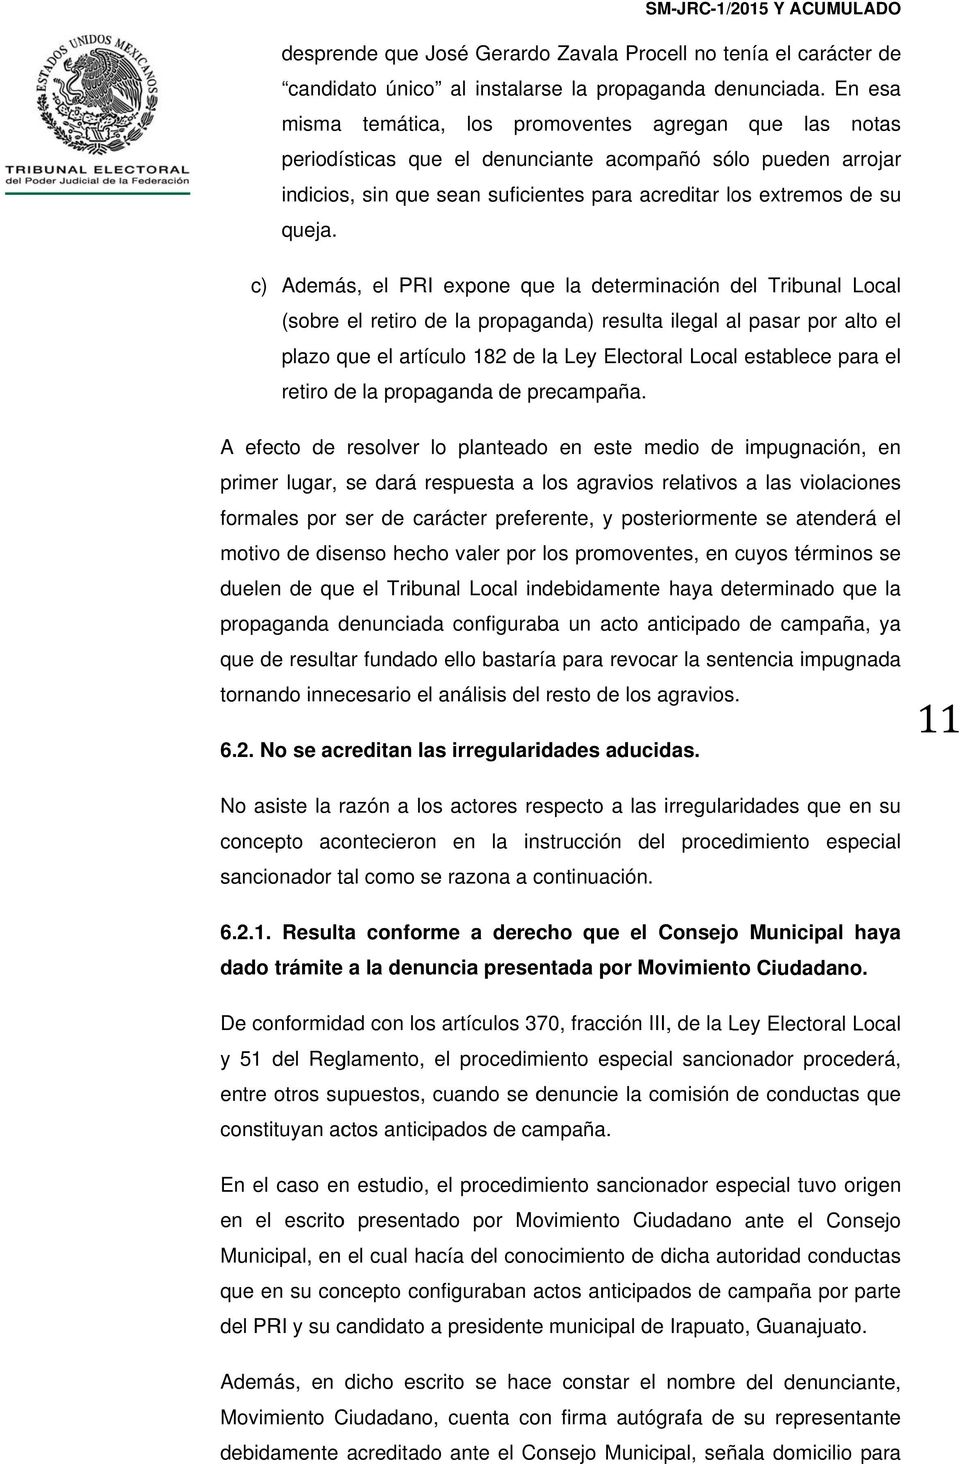 c) Amás, el PRI expone que la terminación l Tribunal Local (sobre el retiro la propaganda) resulta ilegal al pasar por alto el plazo que el artículo 182 la Ley Electoral Local establece para el